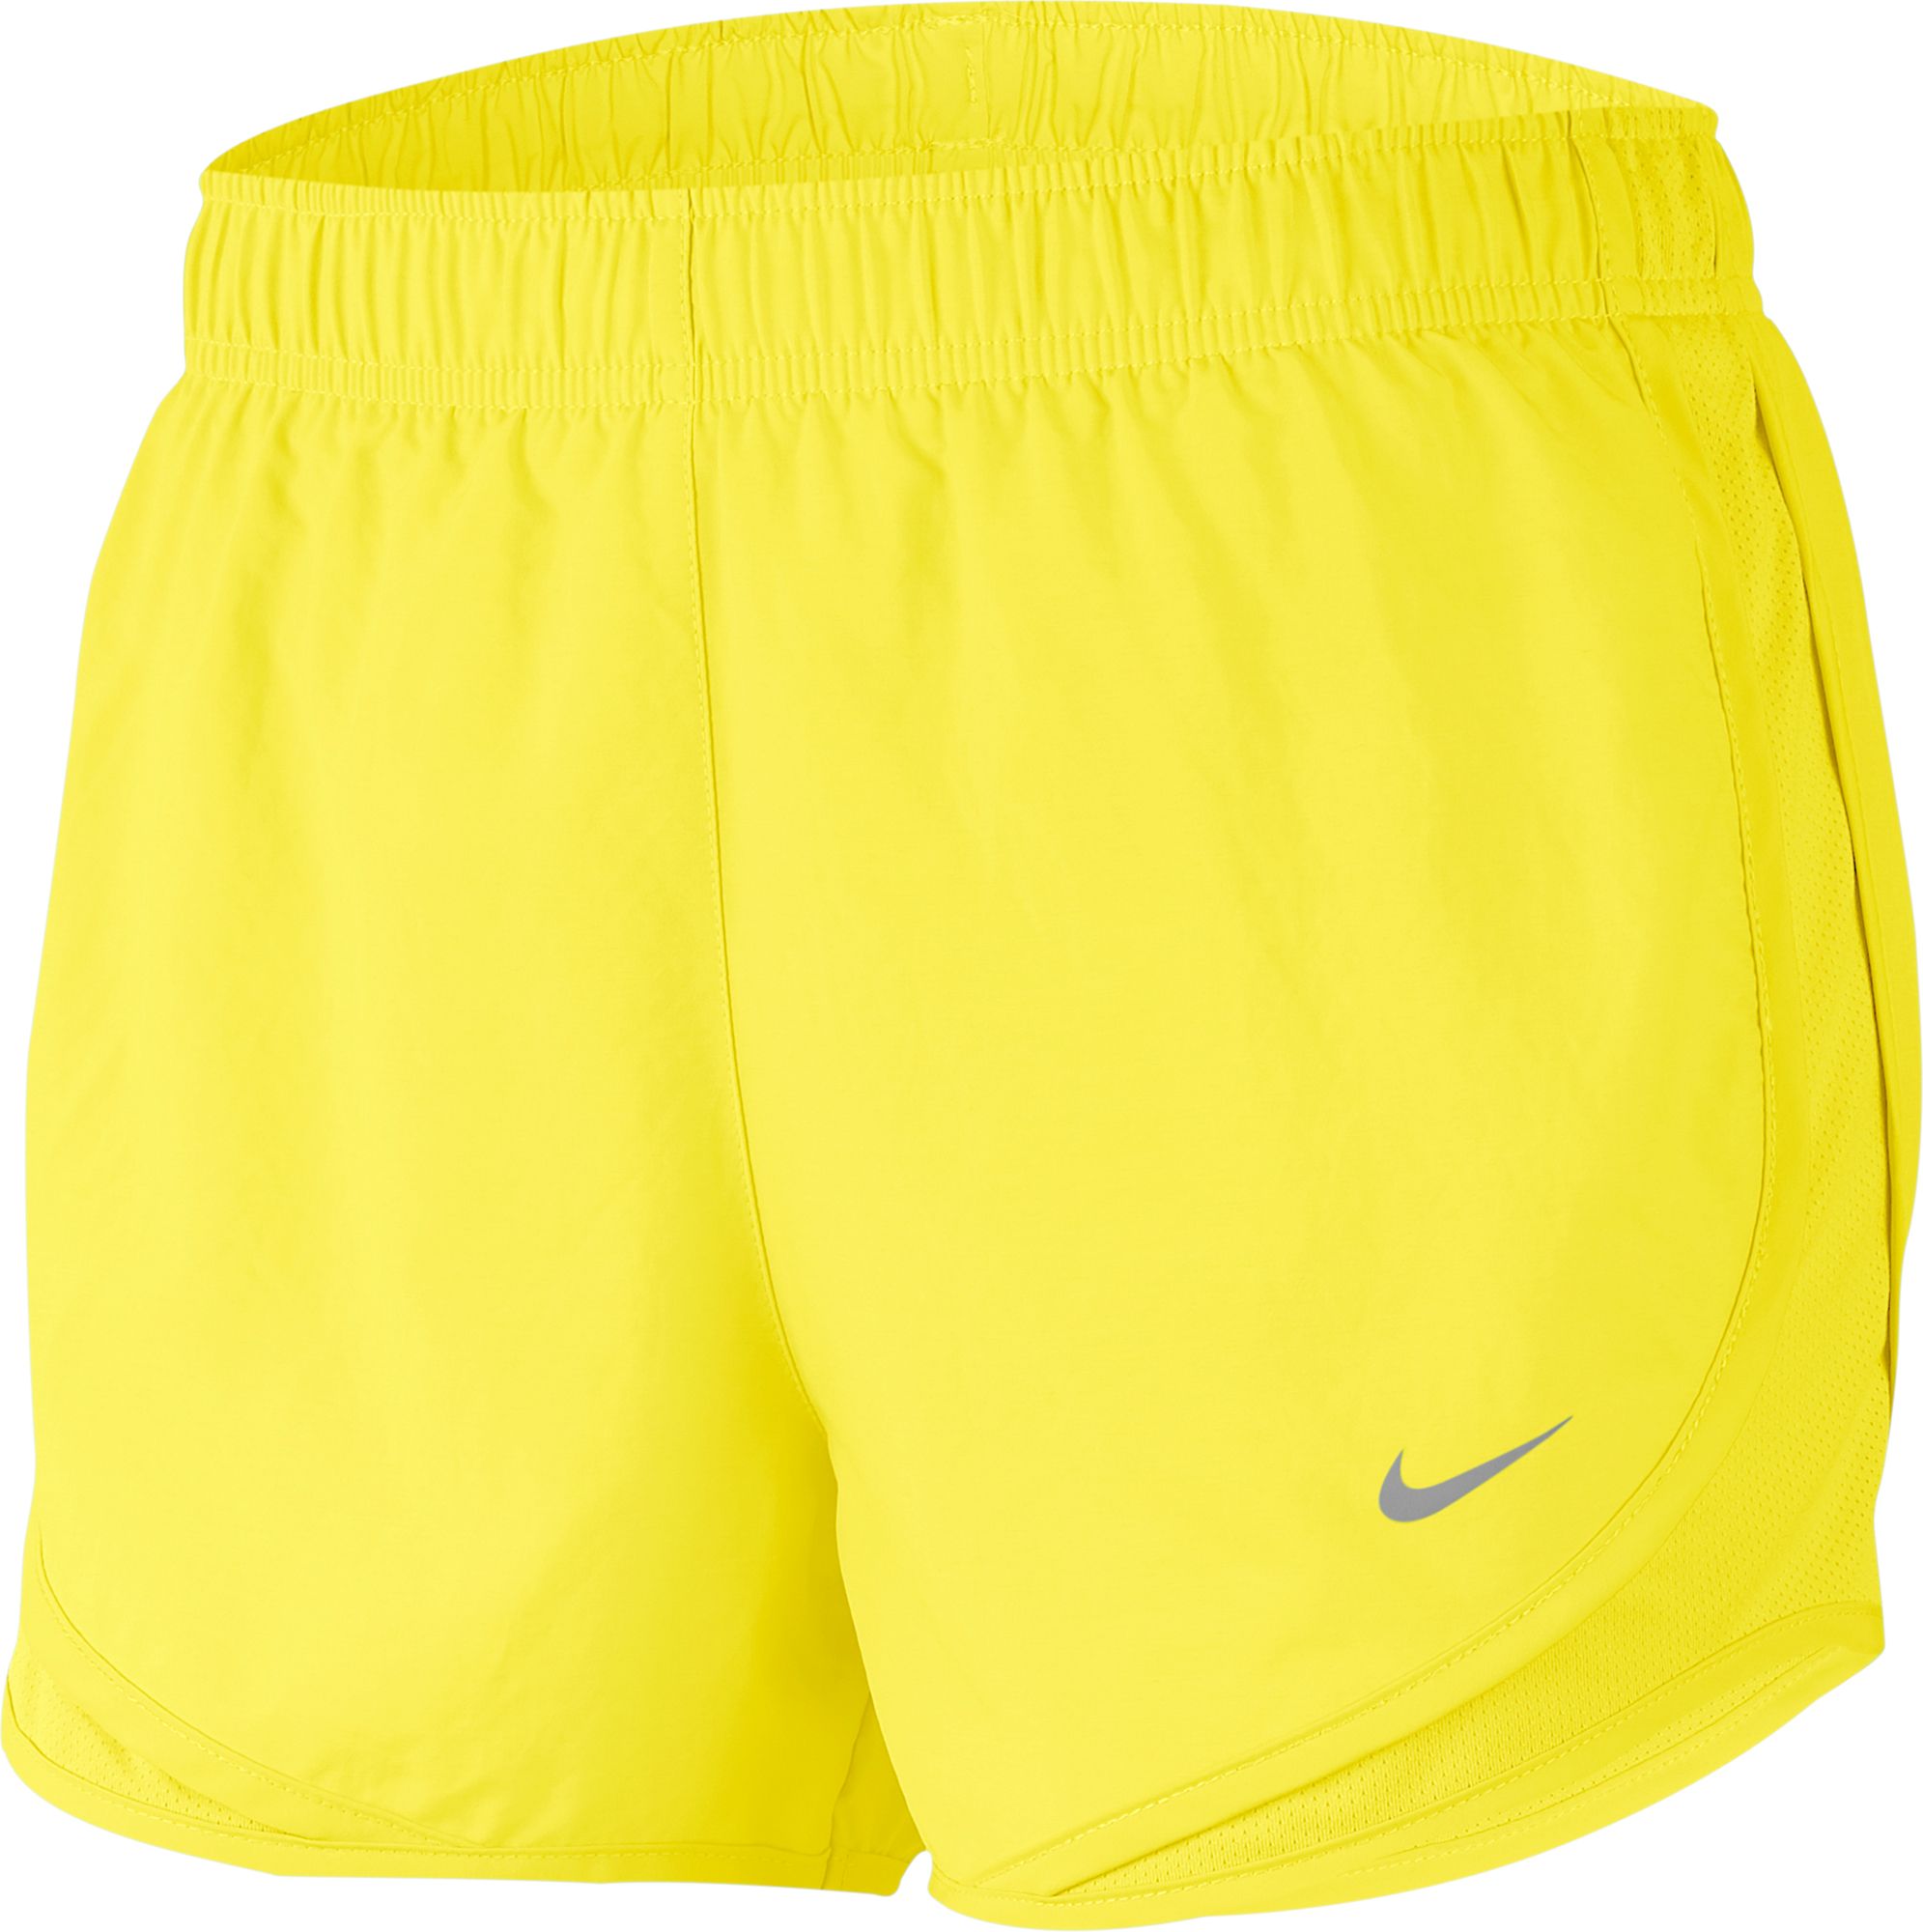 nike yellow shorts mens